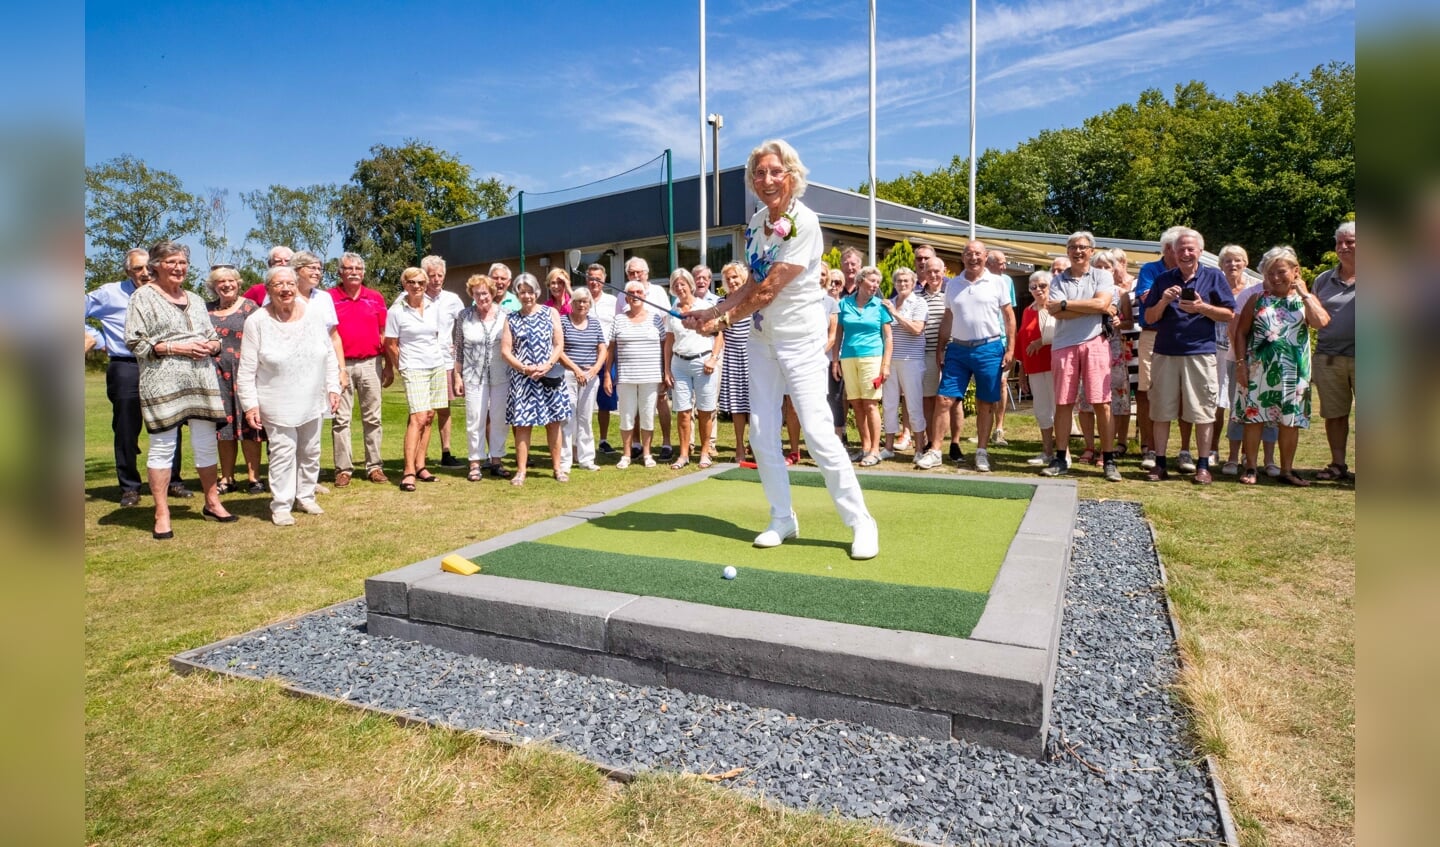 Susan Hosang vierde haar honderdste verjaardag bij golfclub 't Jagerspaadje. 